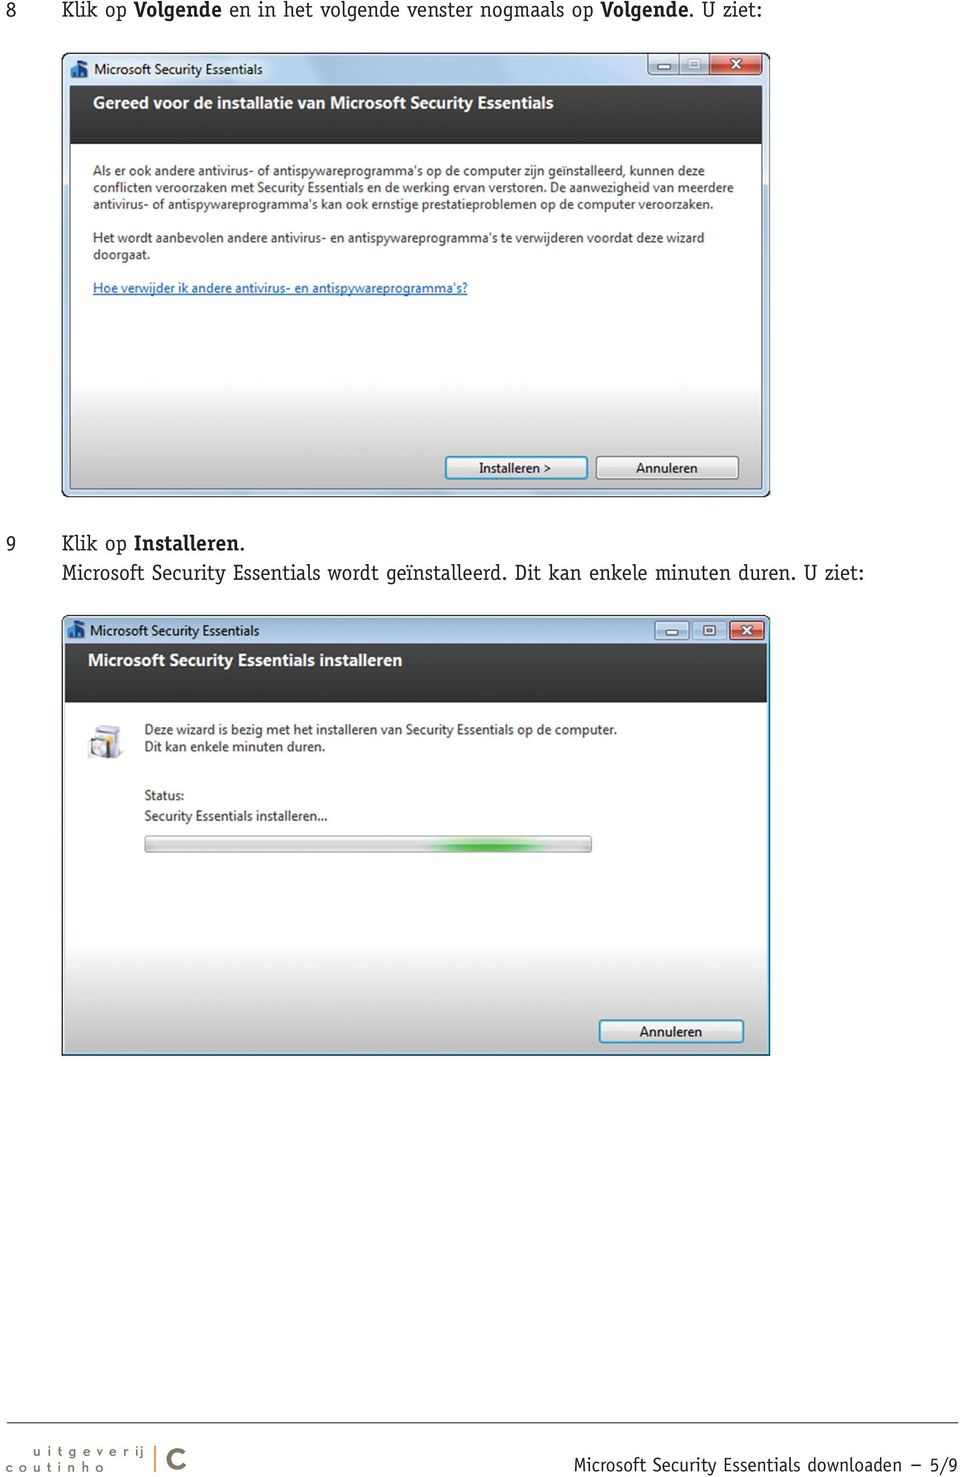 Microsoft Security Essentials wordt geïnstalleerd.